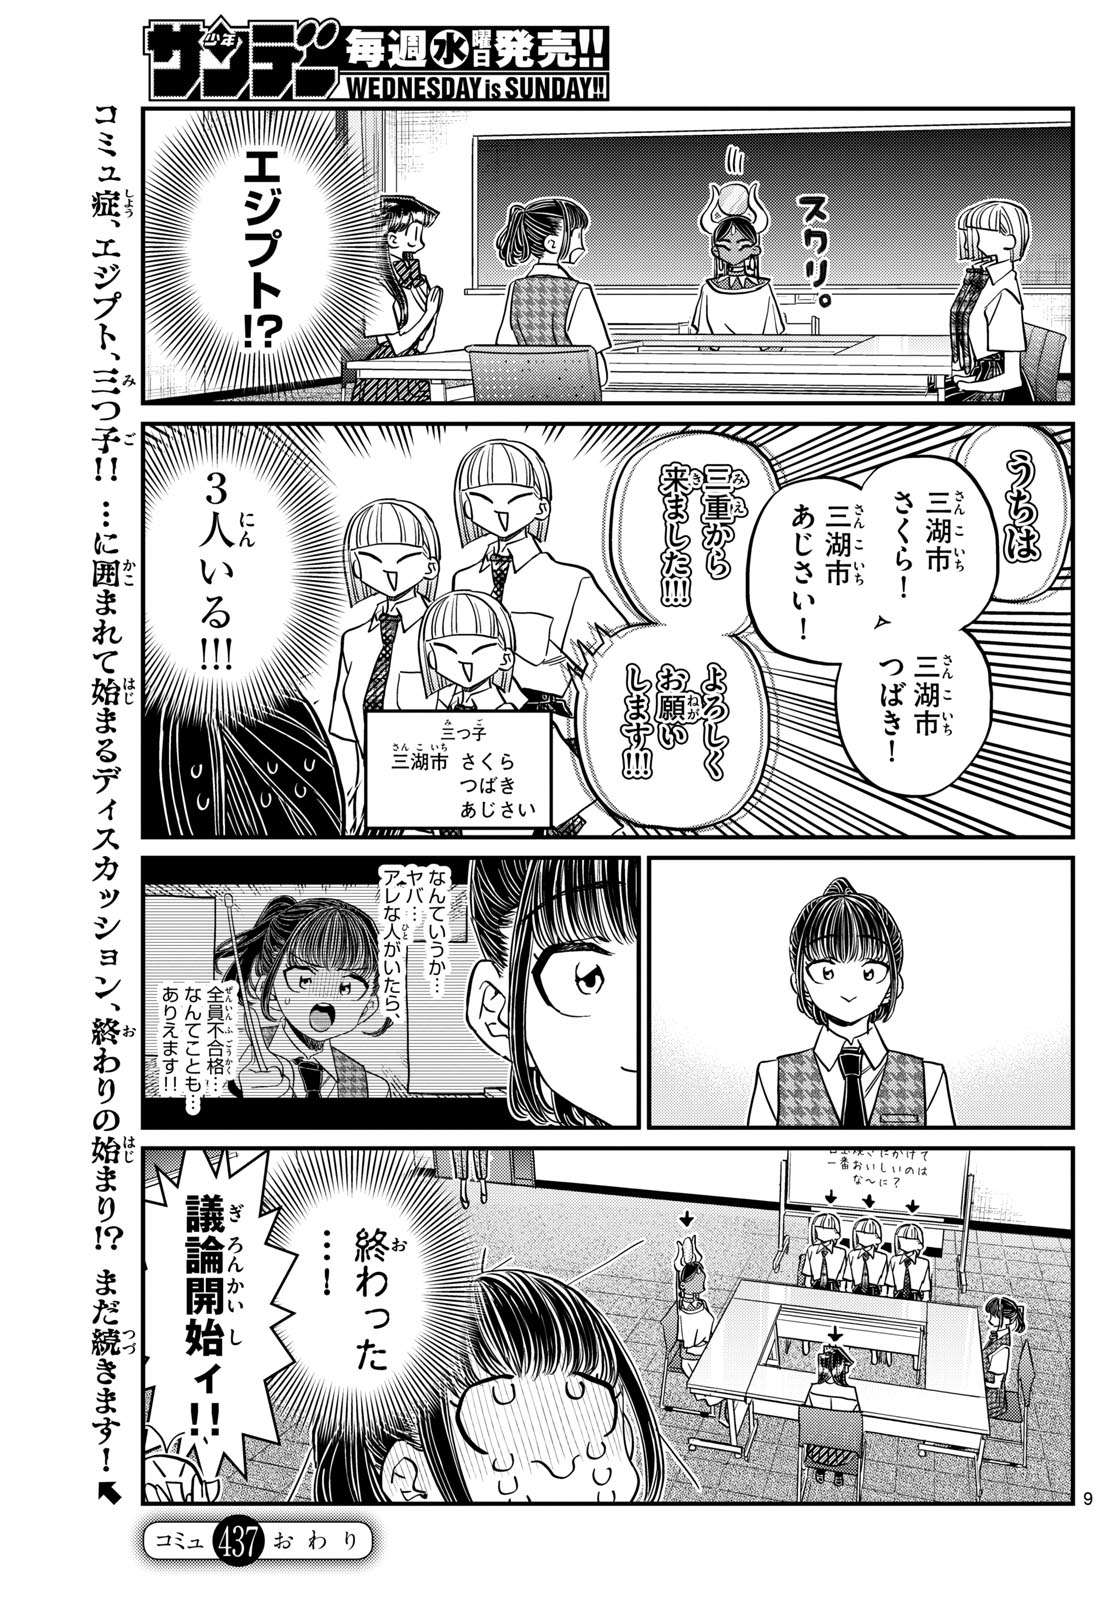 Komi-san wa Komyushou Desu - Chapter 437 - Page 9